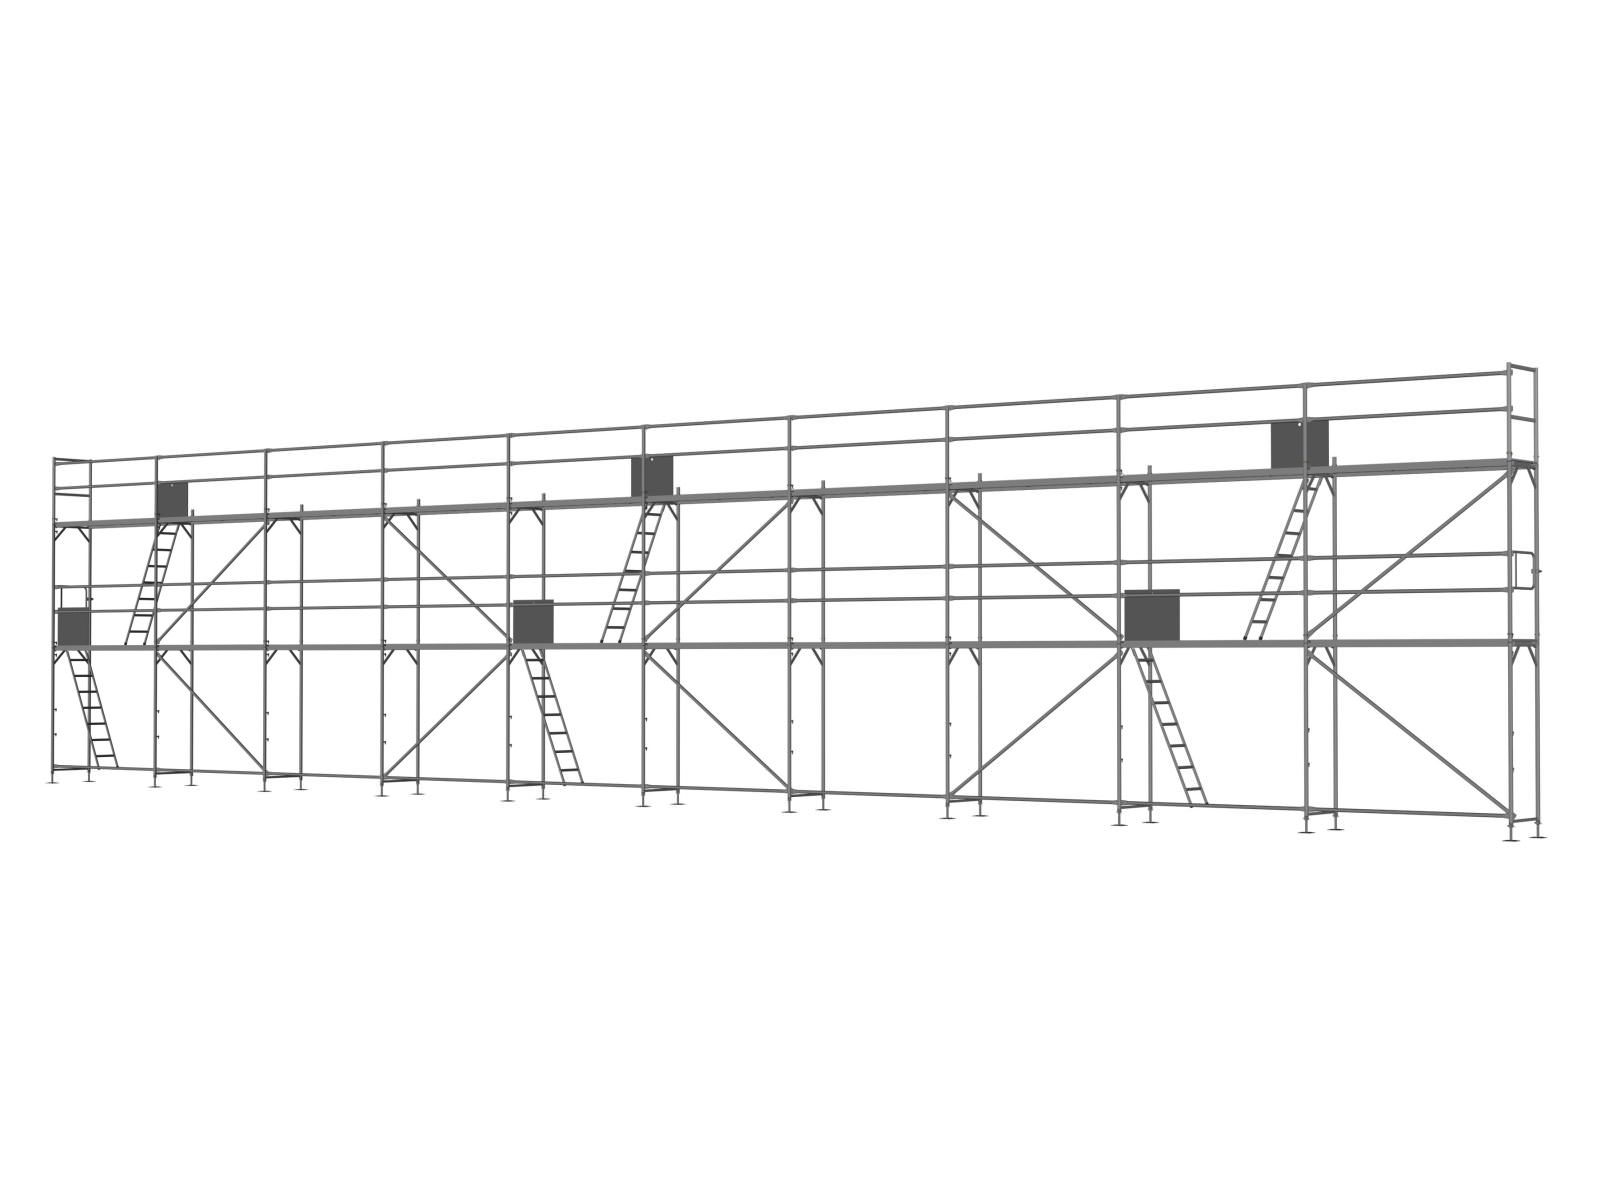 Alu Traufseitengerüst 150 m² - 2,5 m Felder - 25 m lang - 6 m Arbeitshöhe - Basis-Gerüst inkl. Aufstieg & Befestigung